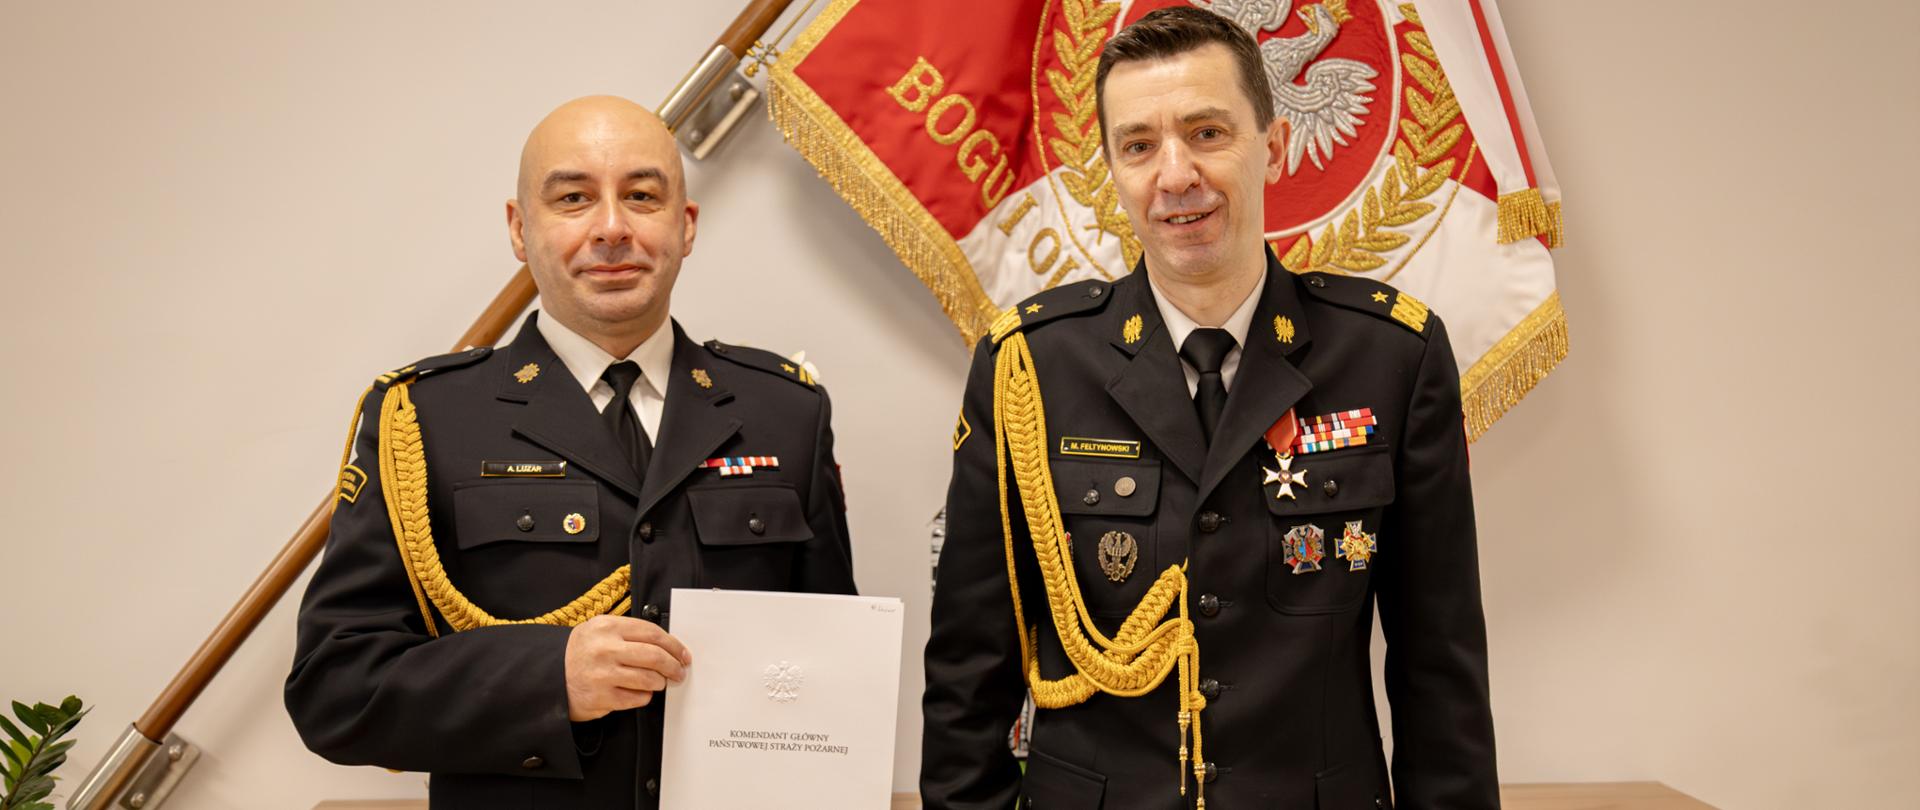 P.o. dyrektor Centralnego Muzeum Pożarnictwa w Mysłowicach oraz komendant główny PSP pozują razem do zdjęcia po wręczeniu decyzji